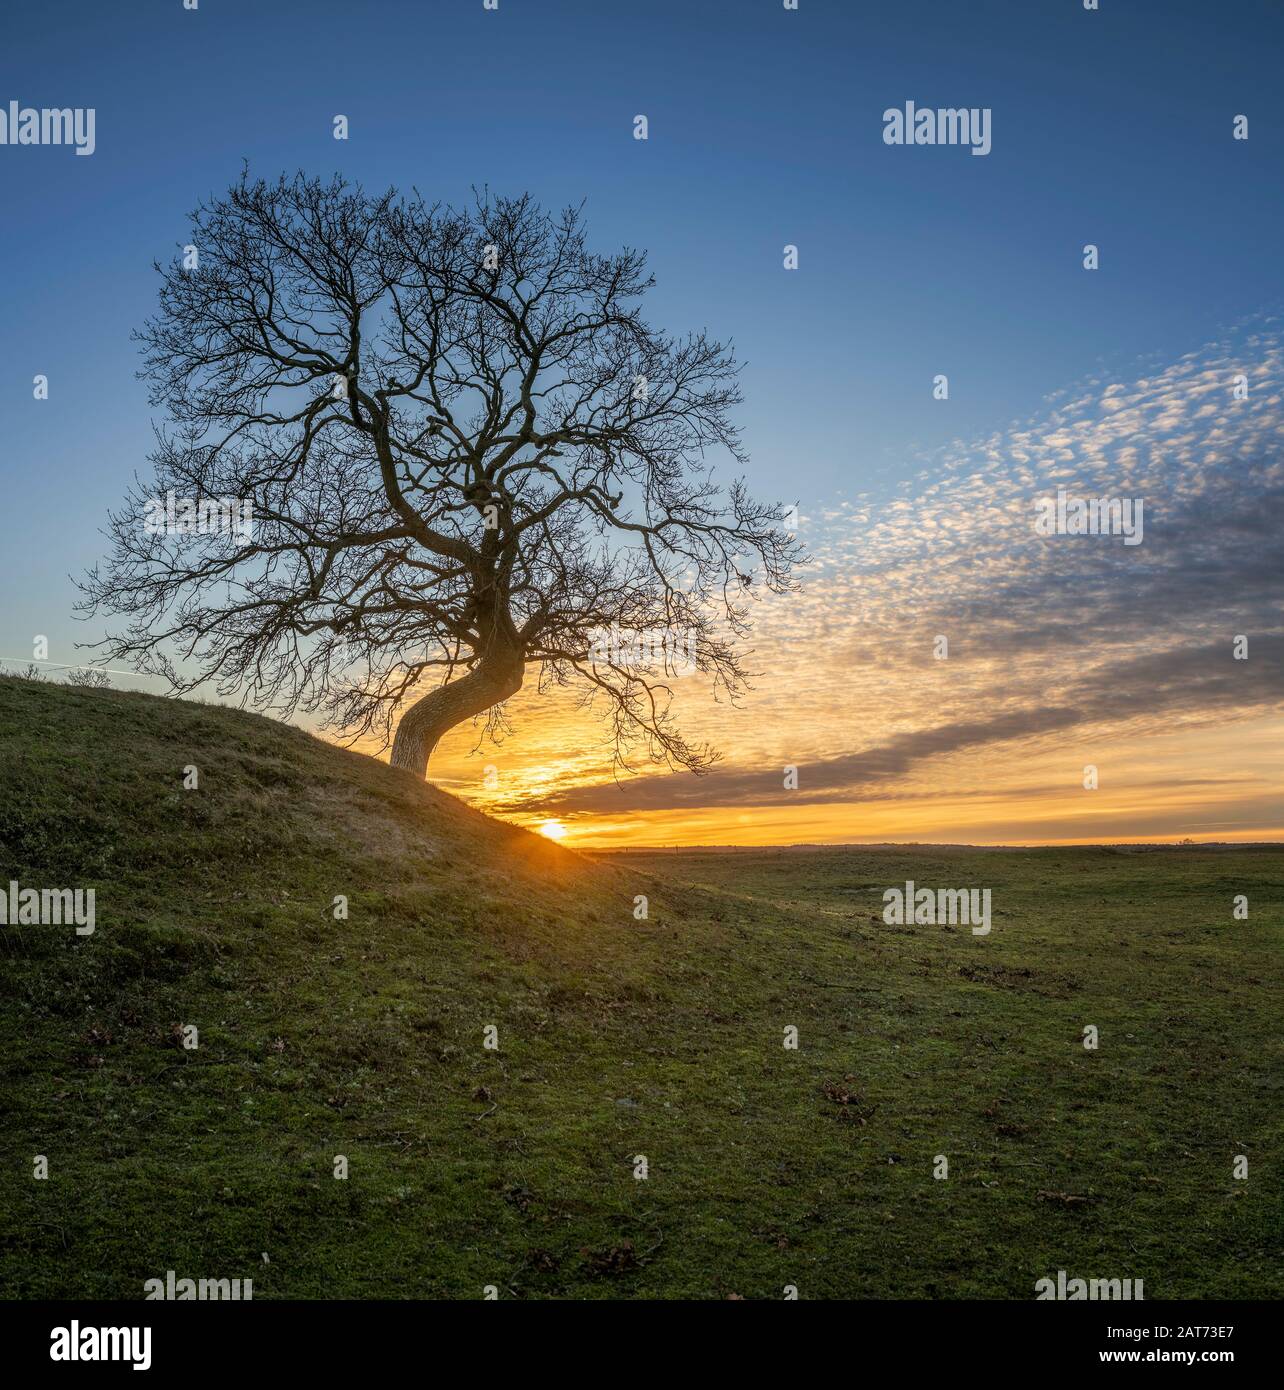 Arbre solitaire avec branches nues contre coucher de soleil à Havang, Ravlunda, Skane, Suède, Scandinavie. Banque D'Images